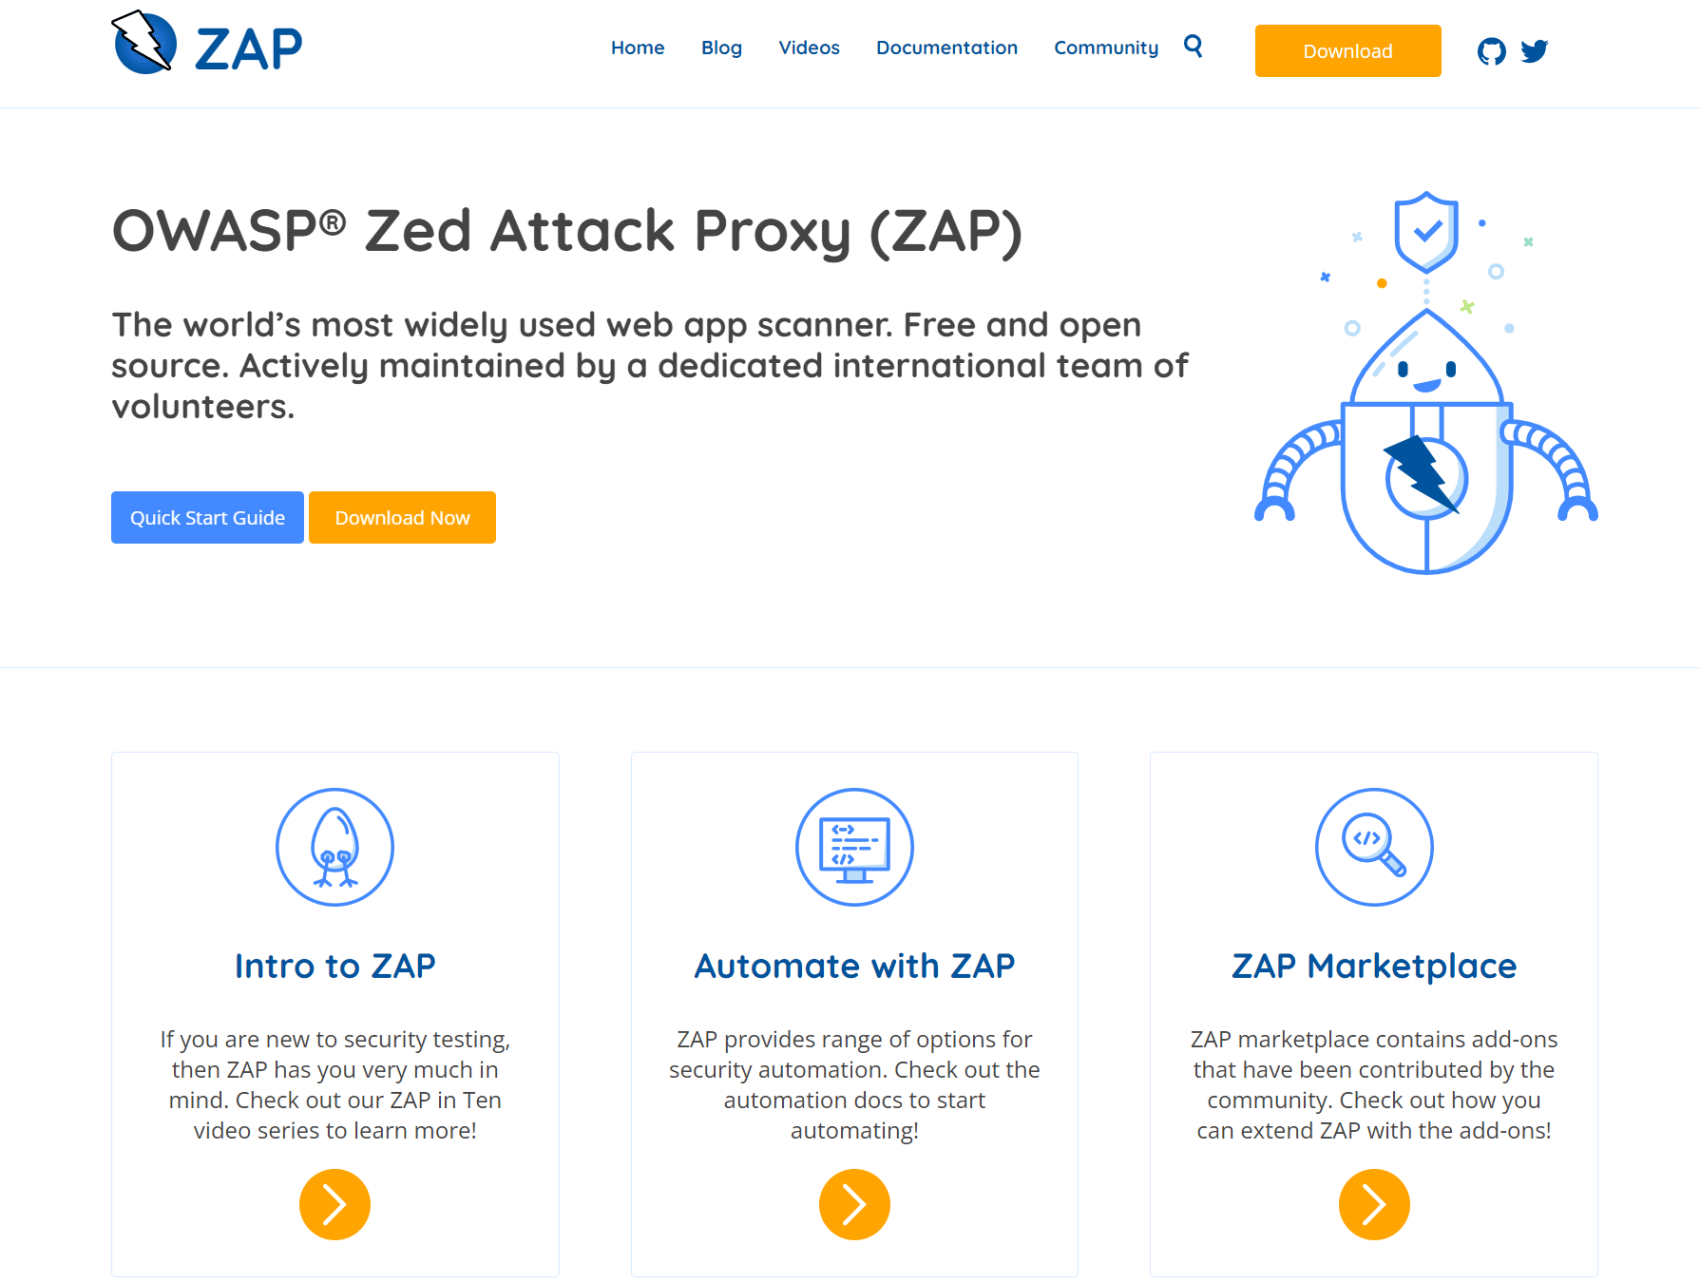 Herramientas gratuitas de ciberseguridad - Zed Attack Proxy (ZAP)